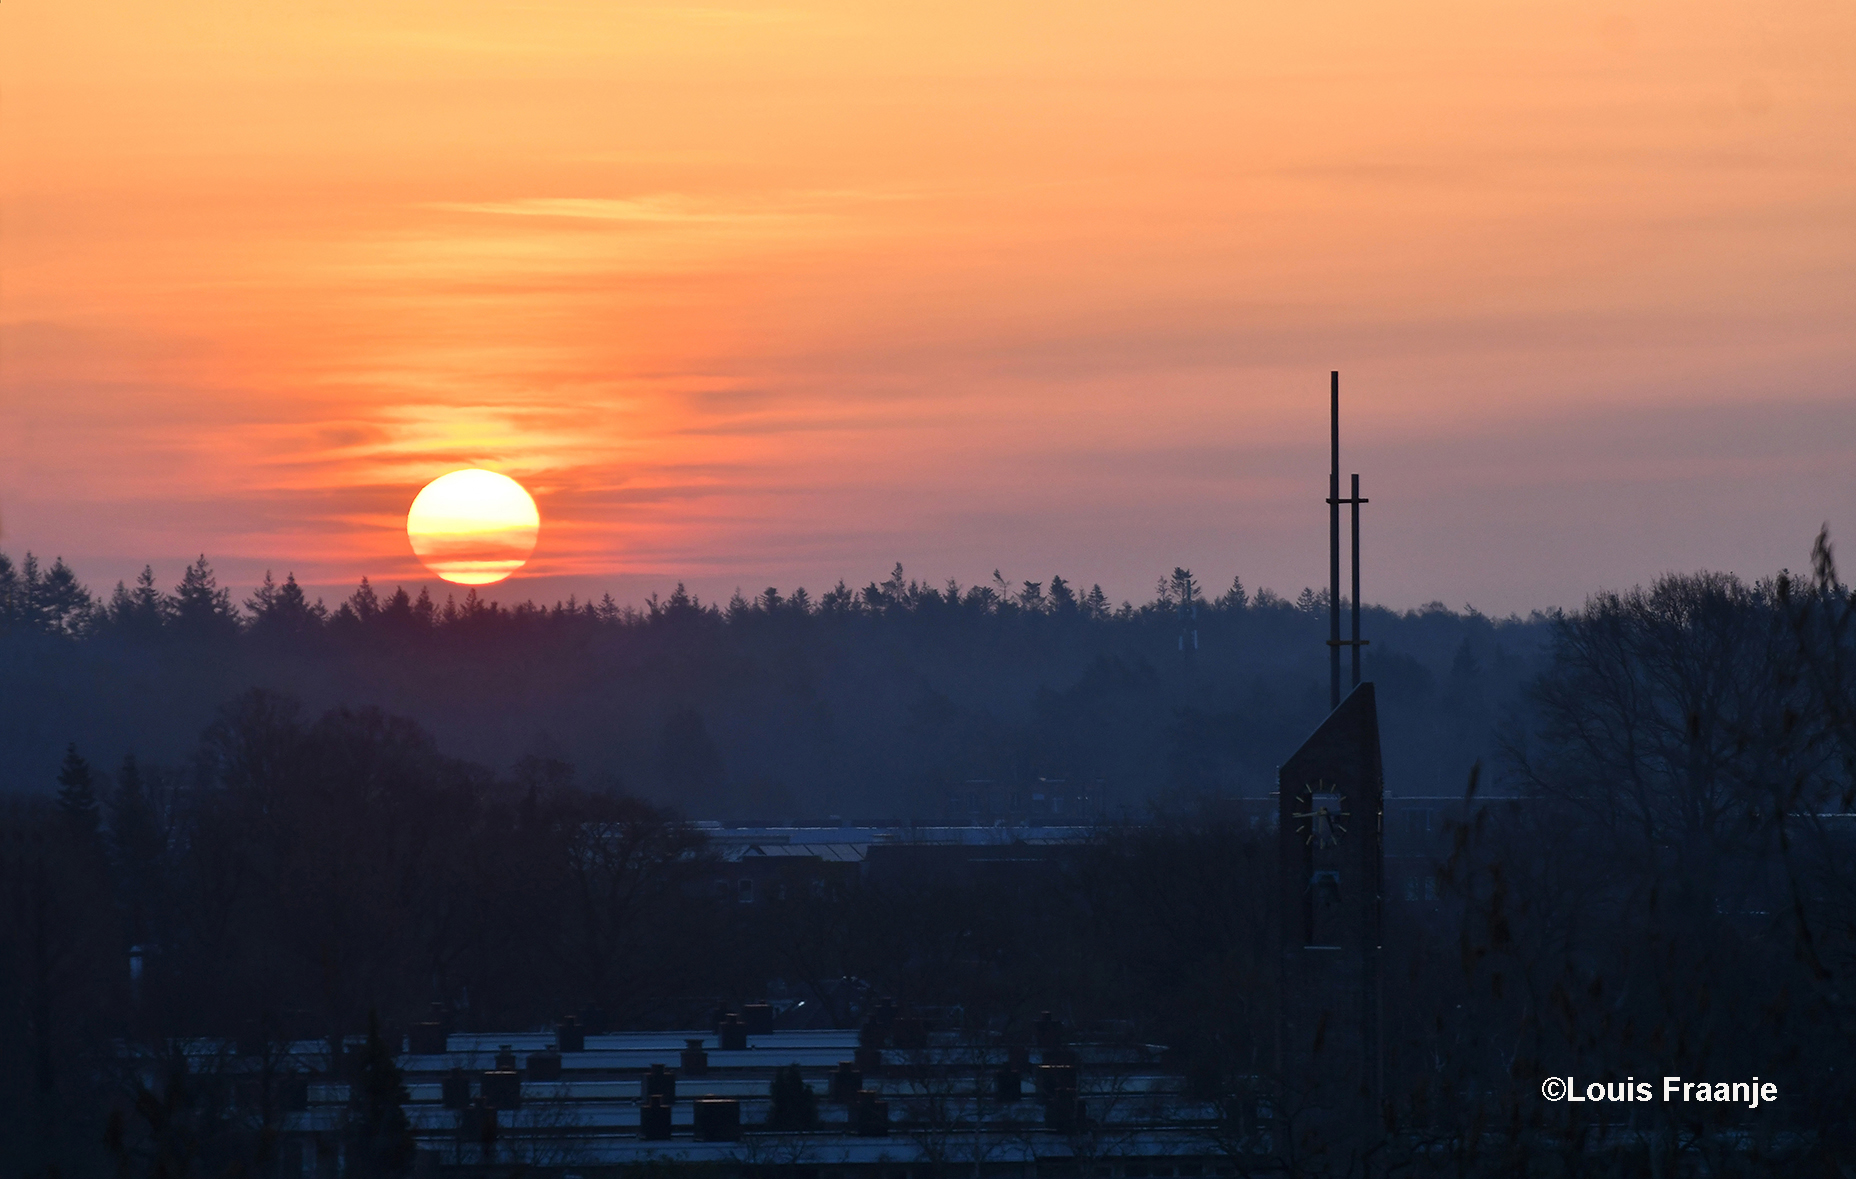 Prachtige zonsopkomst en rechts in beeld is de toren van de Bethelkerk duidelijk zichtbaar - Foto: ©Louis Fraanje